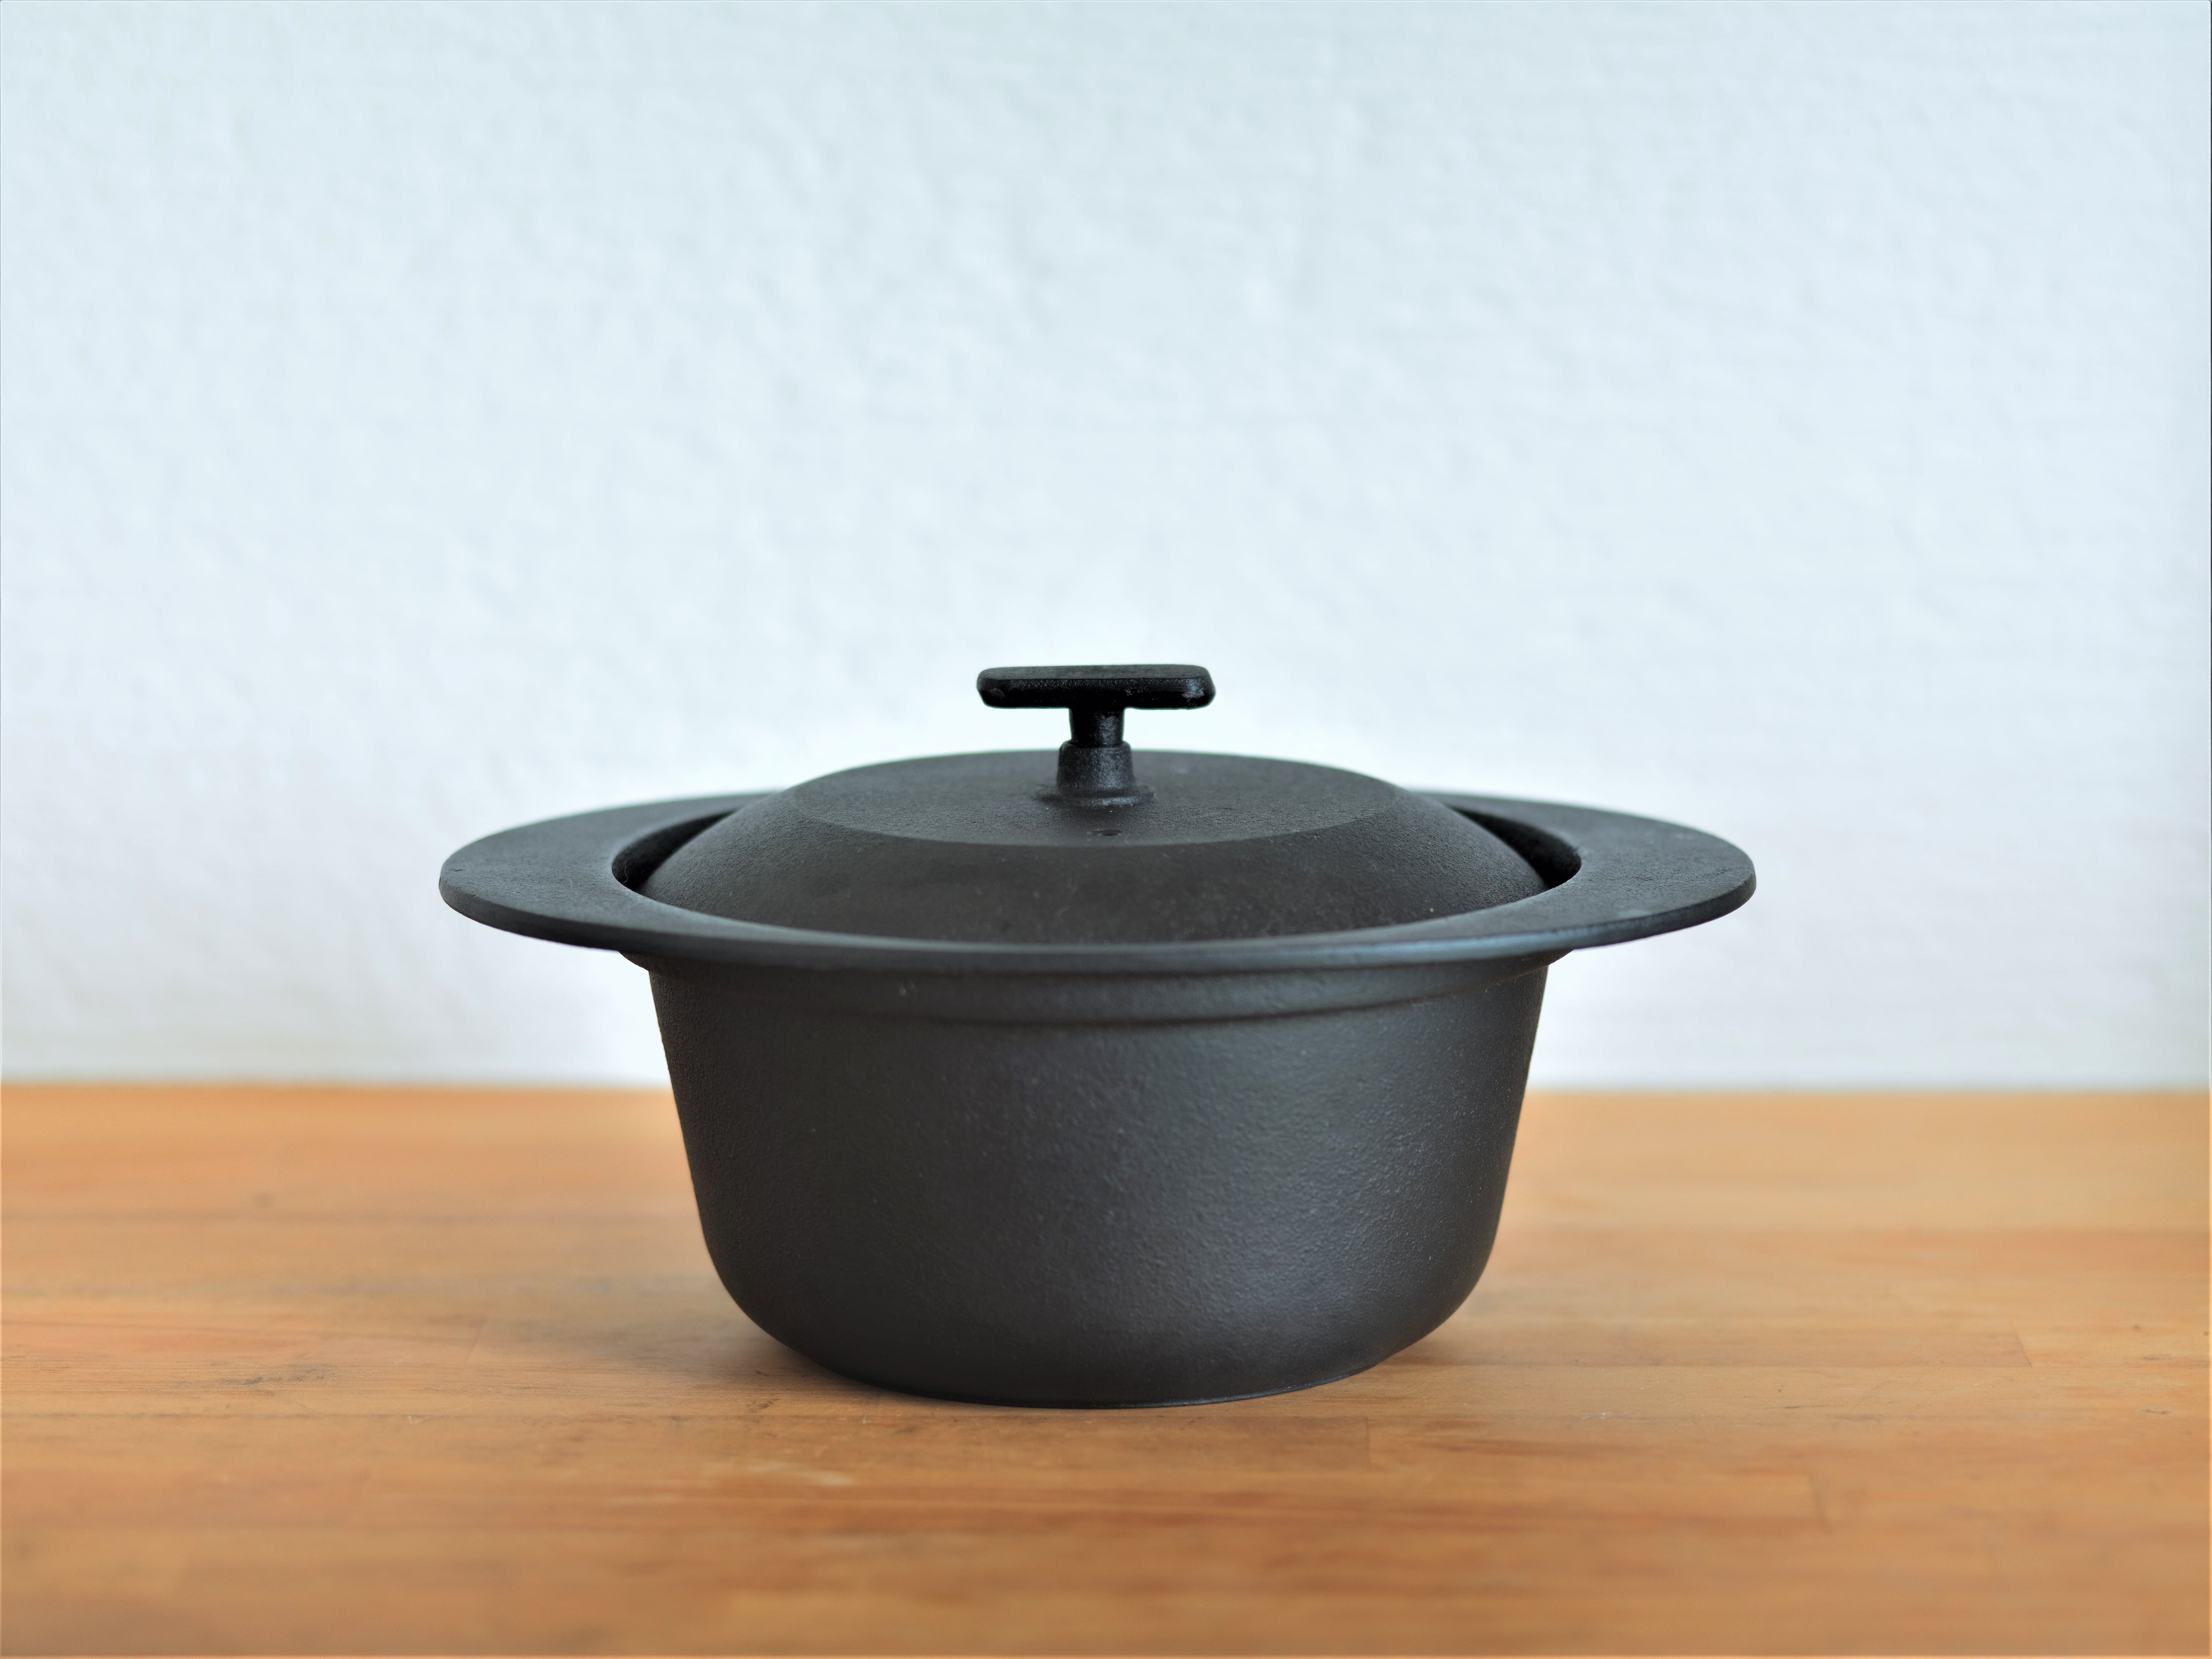 Wholesale Large Oval Black Cast Iron Stock Pot Dutch Oven Soup